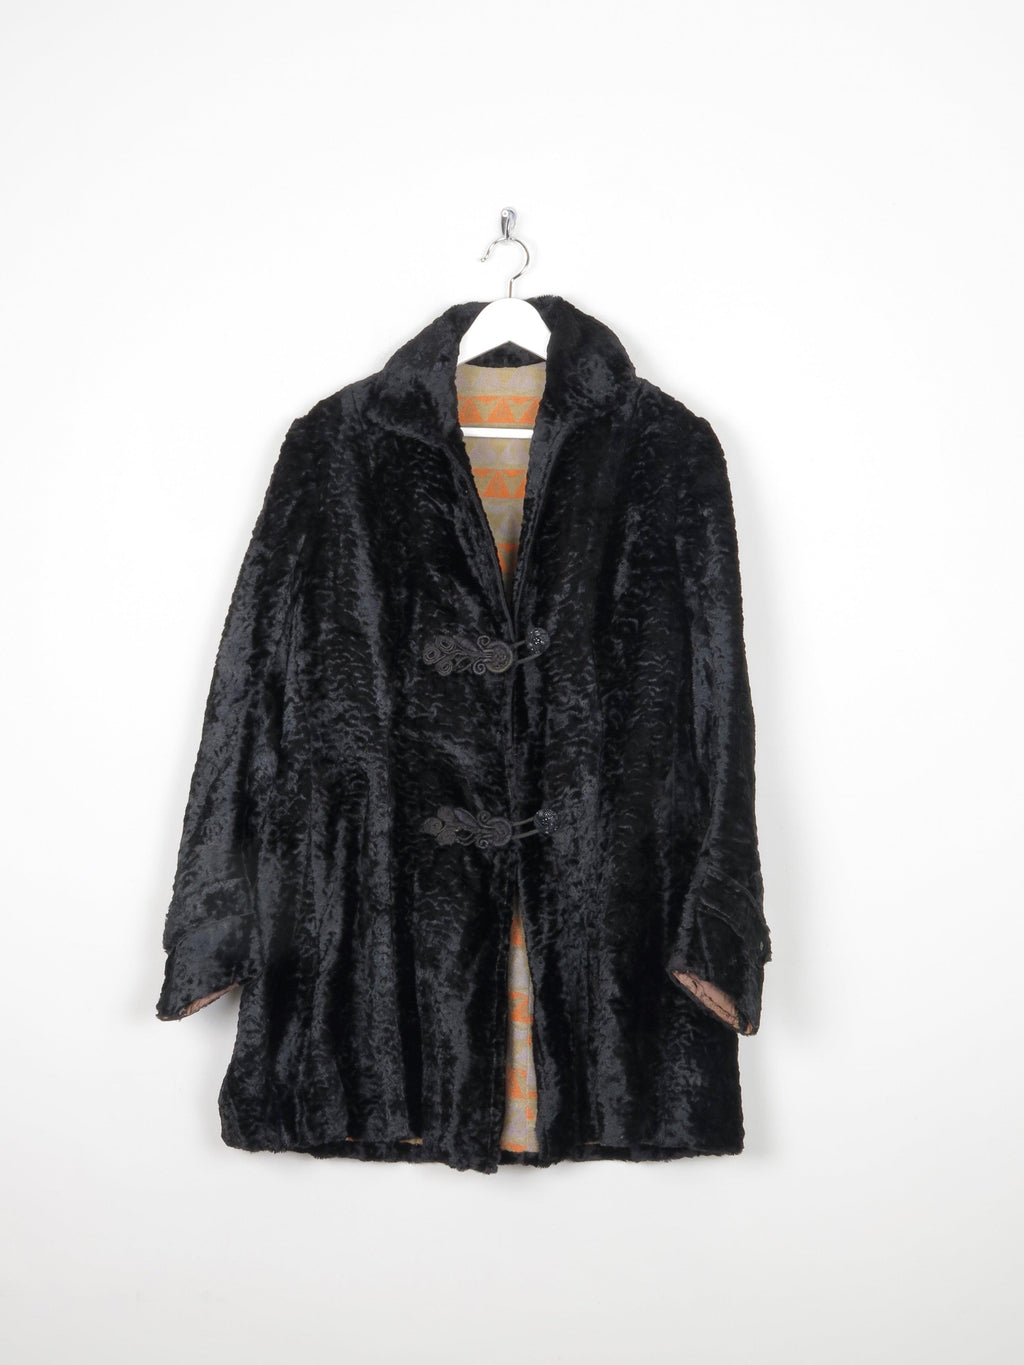 Women's Black Vintage Velvet Crushed Long Jacket 10/12 - The Harlequin